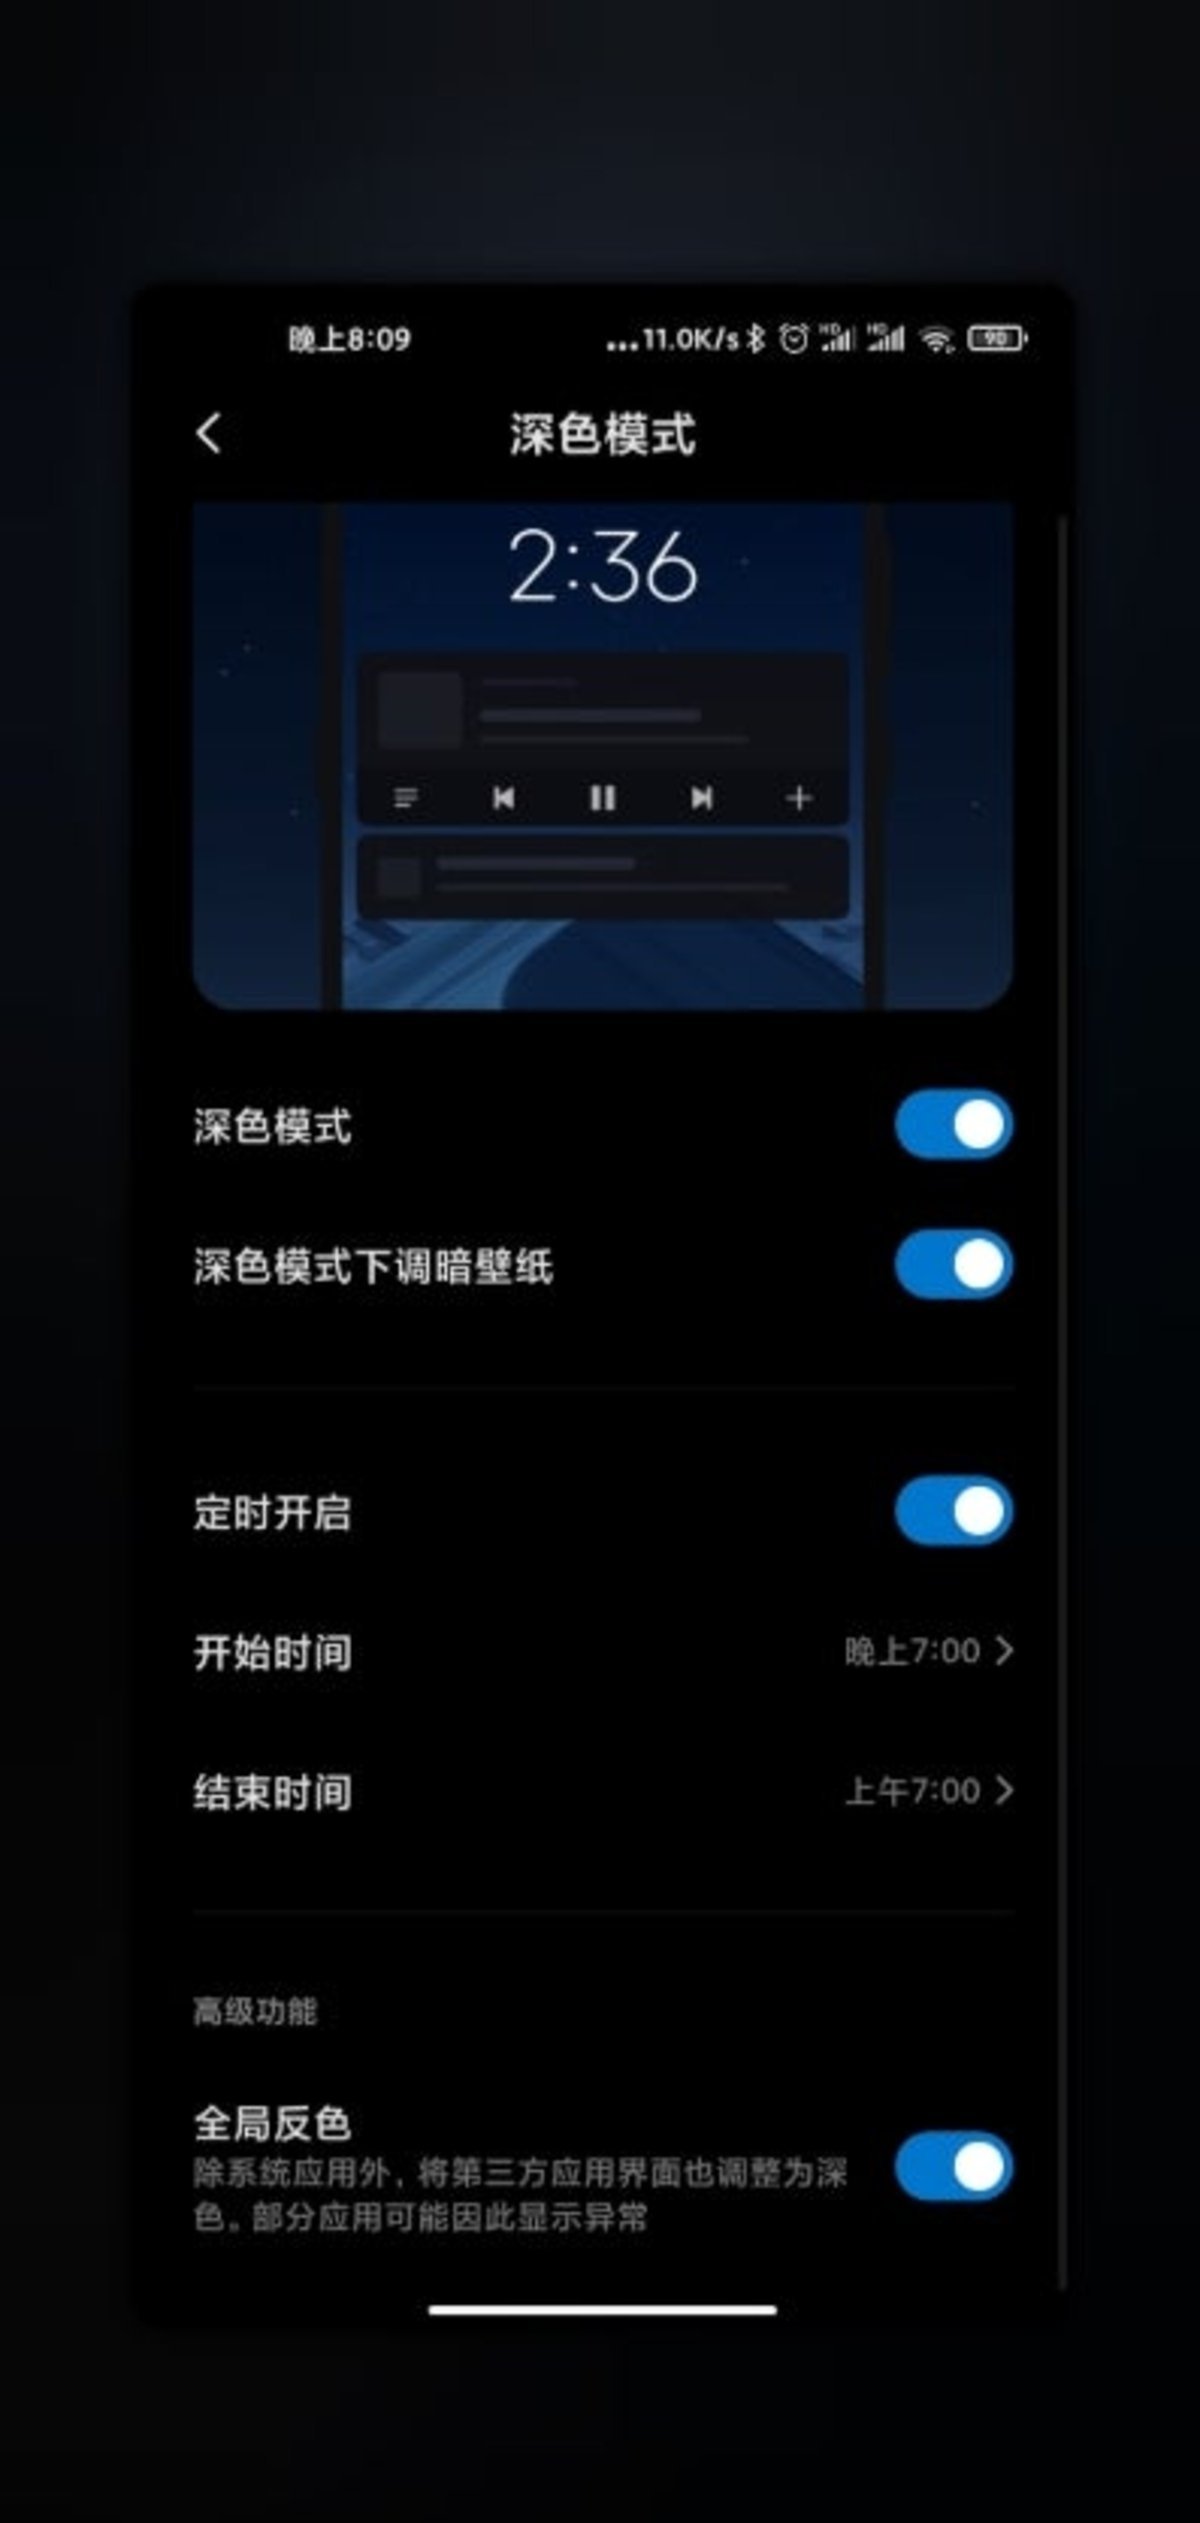 MIUI 12, en imágenes: Xiaomi desvela las novedades de la nueva actualización